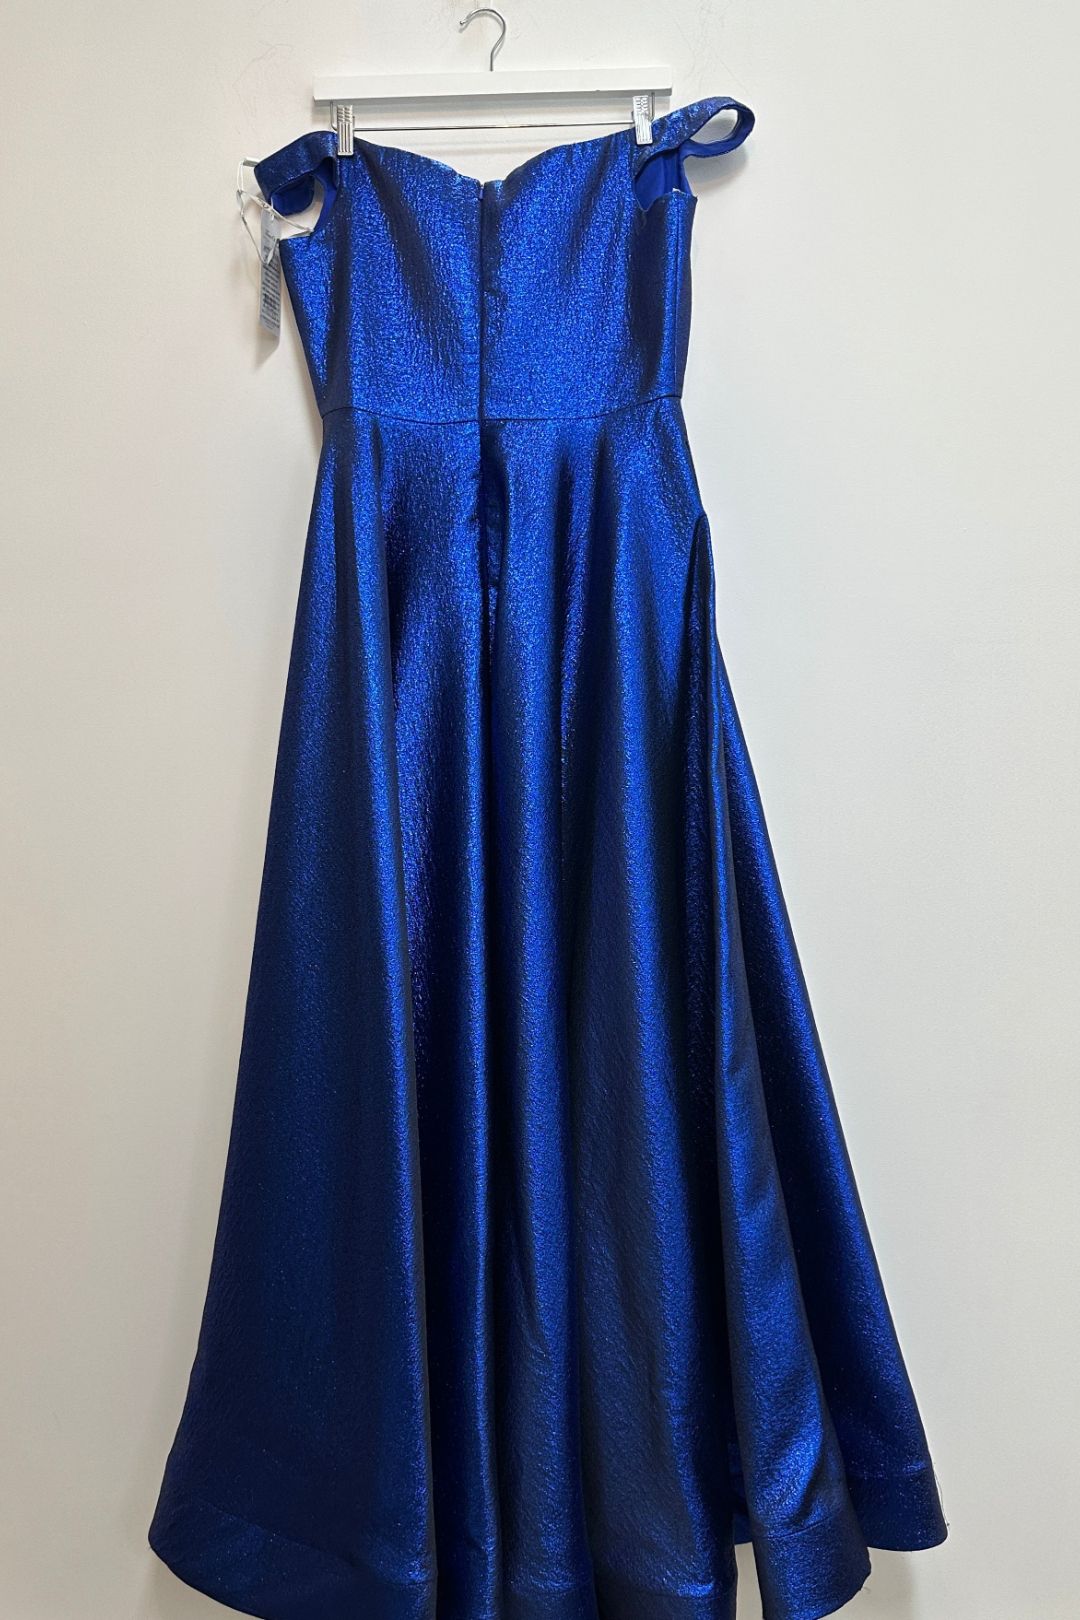 Clover Strapless Metallic Blue Formal Dress